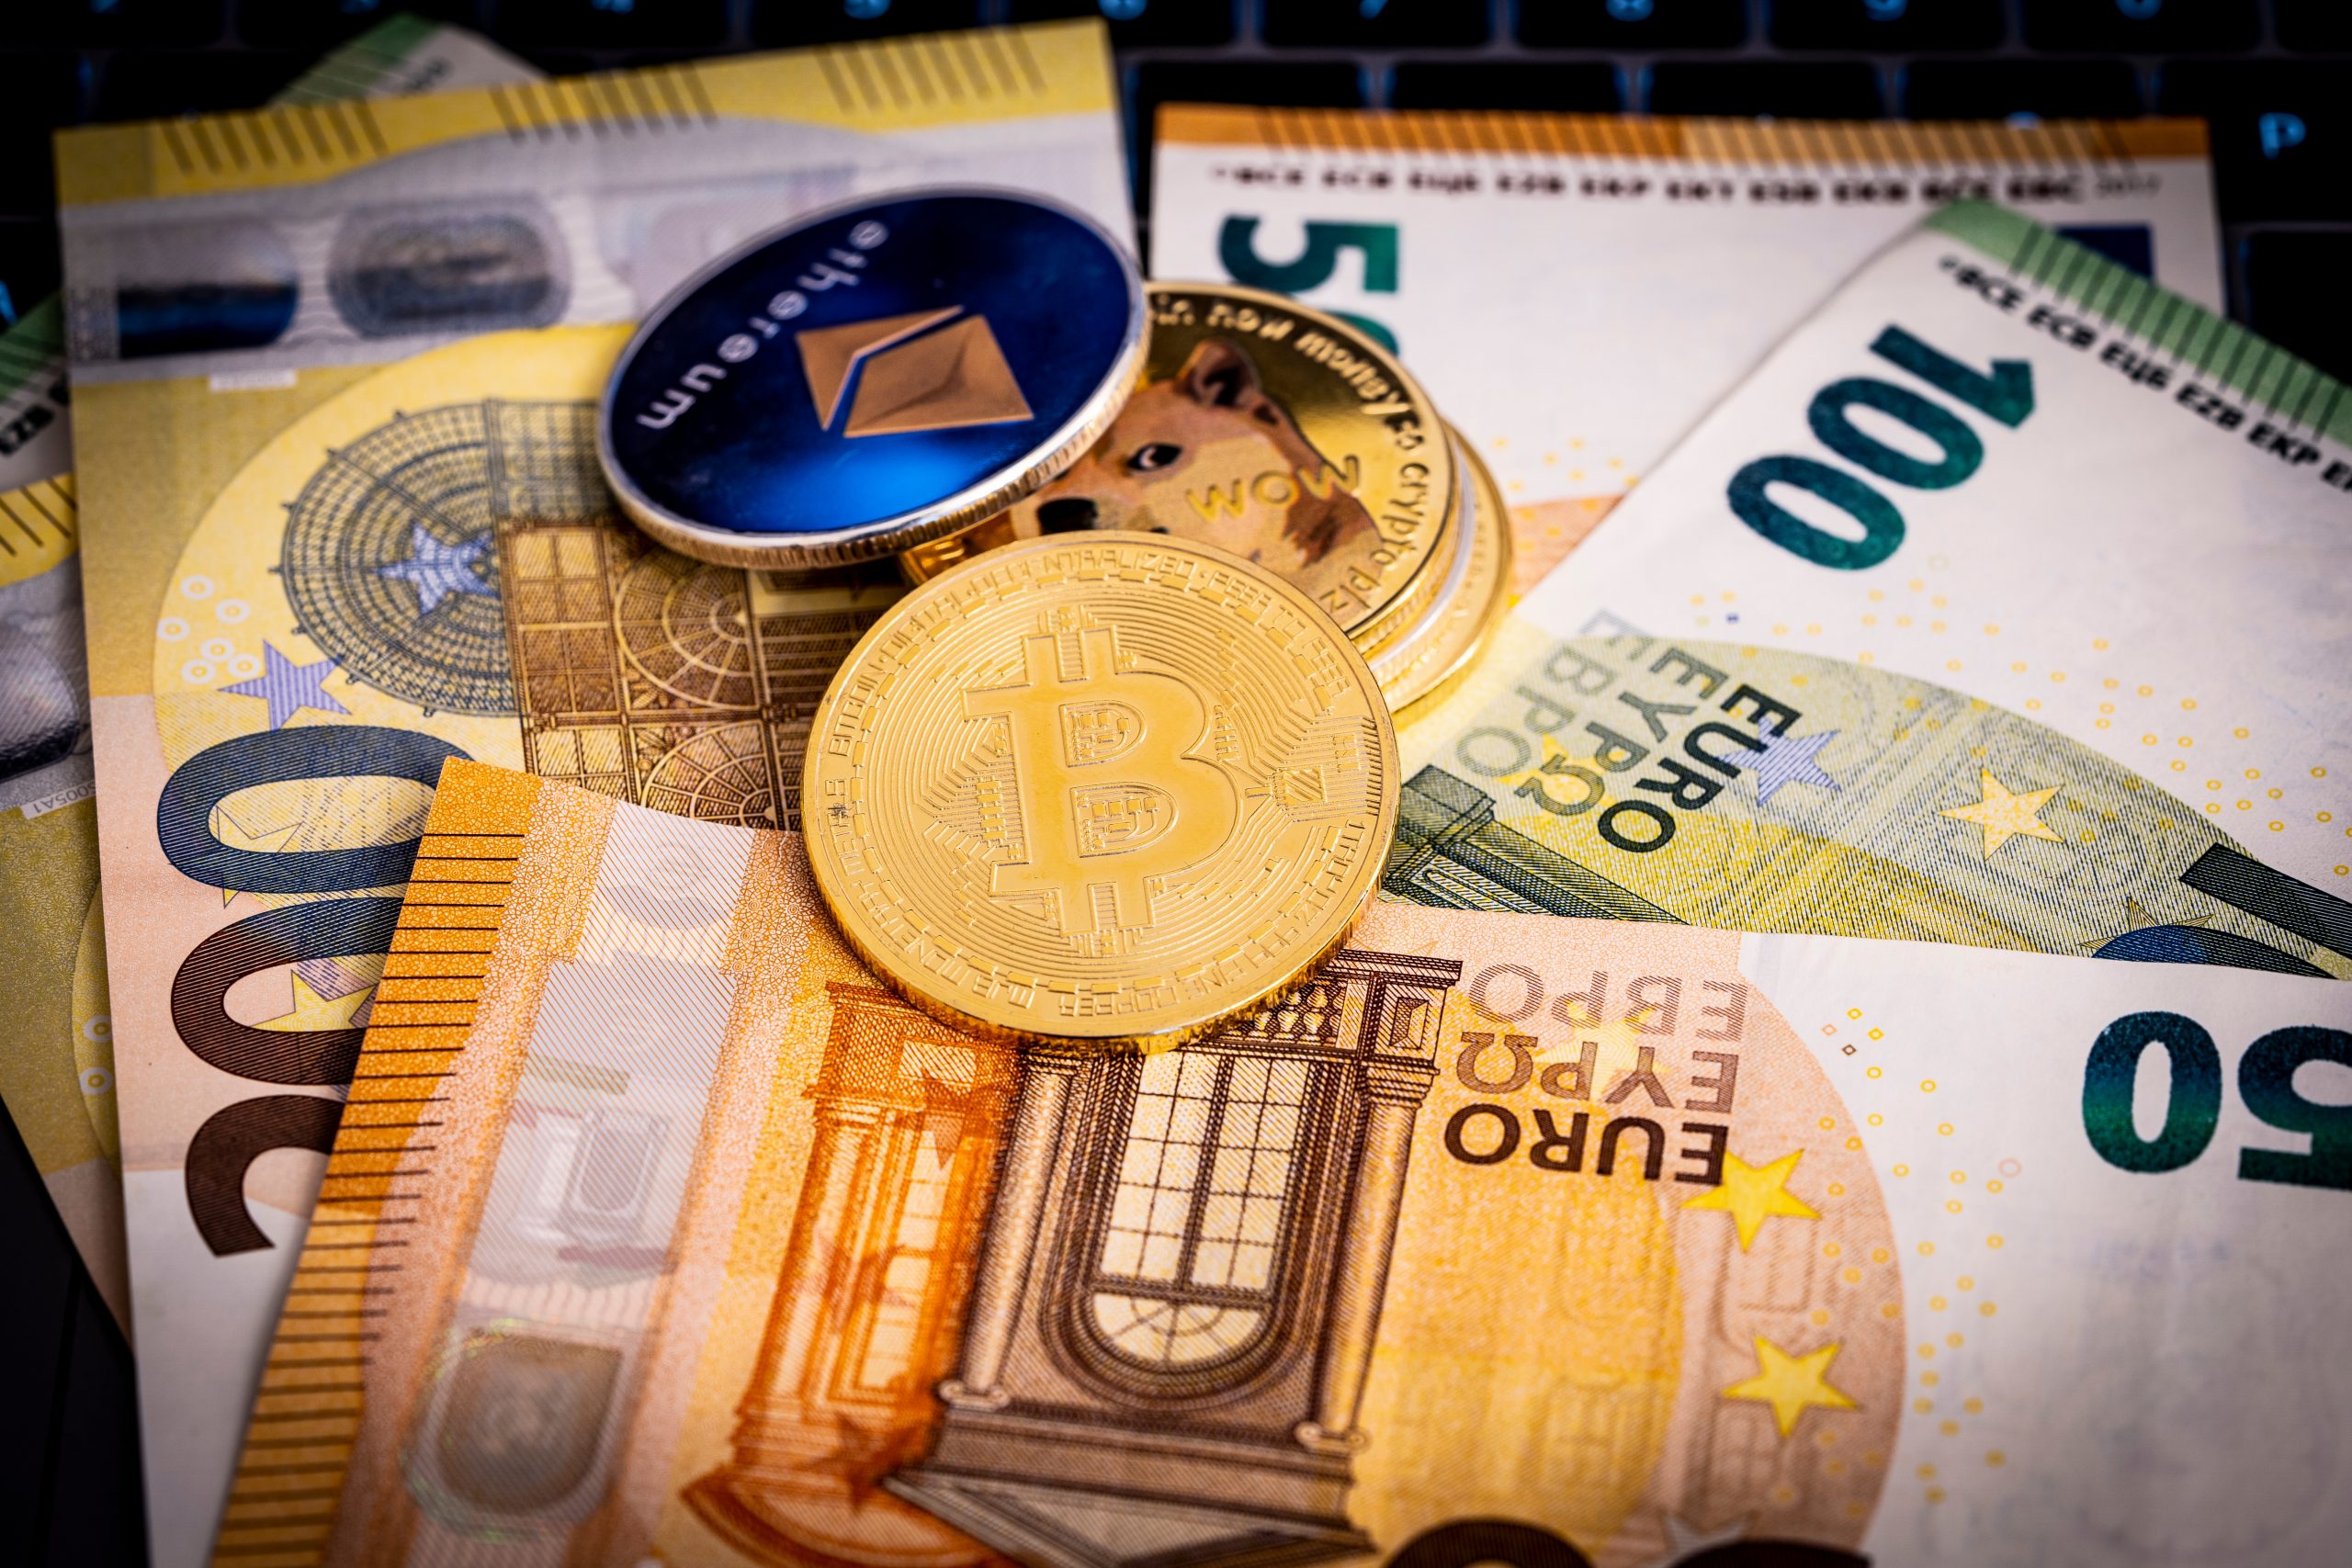 Comprendre et s'initier aux cryptomonnaies avec 100 euros - WE DEMAIN